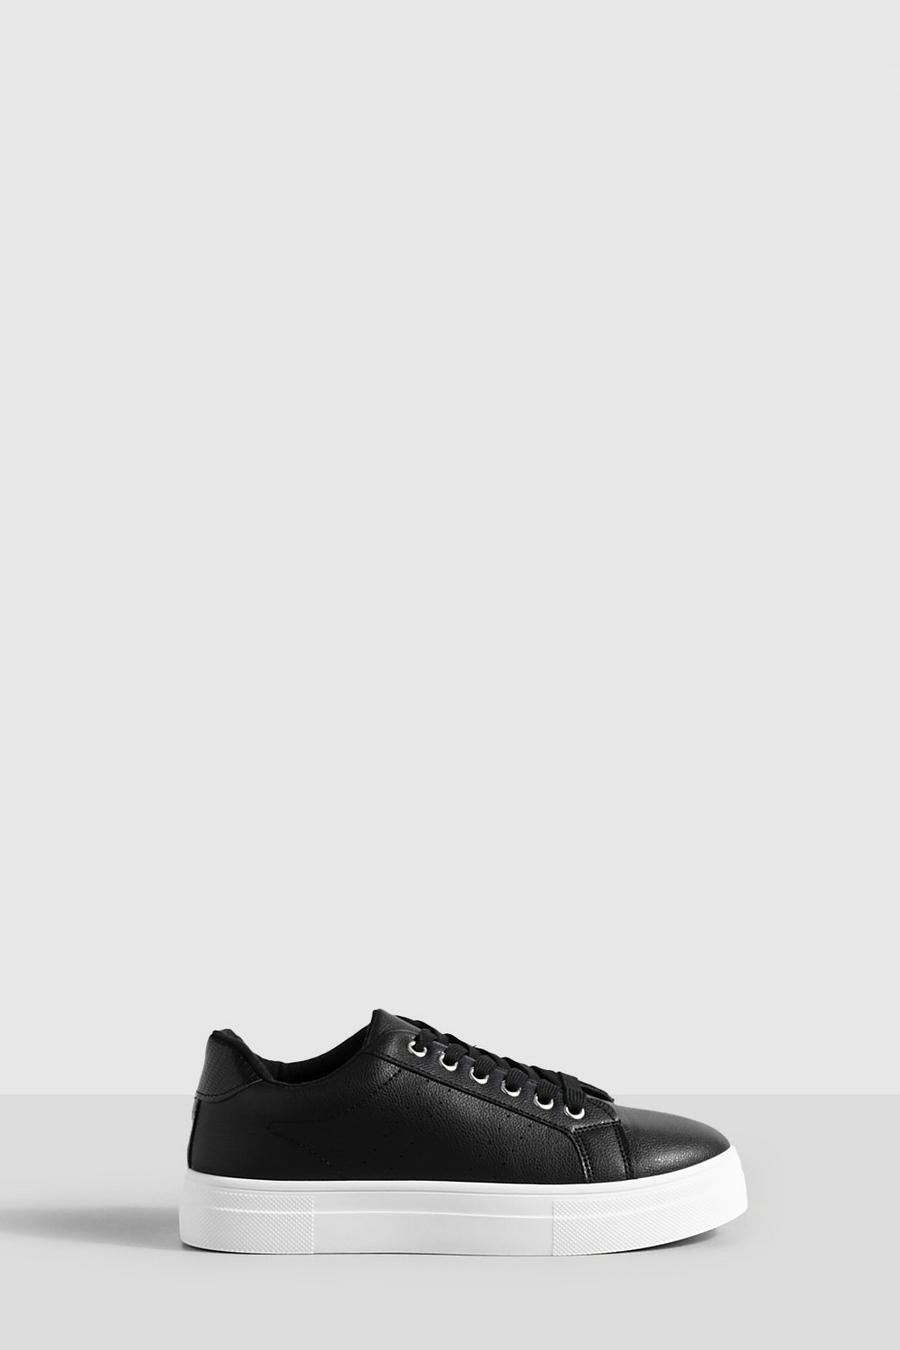 Zapatillas deportivas planas con suela de plataforma, Black nero